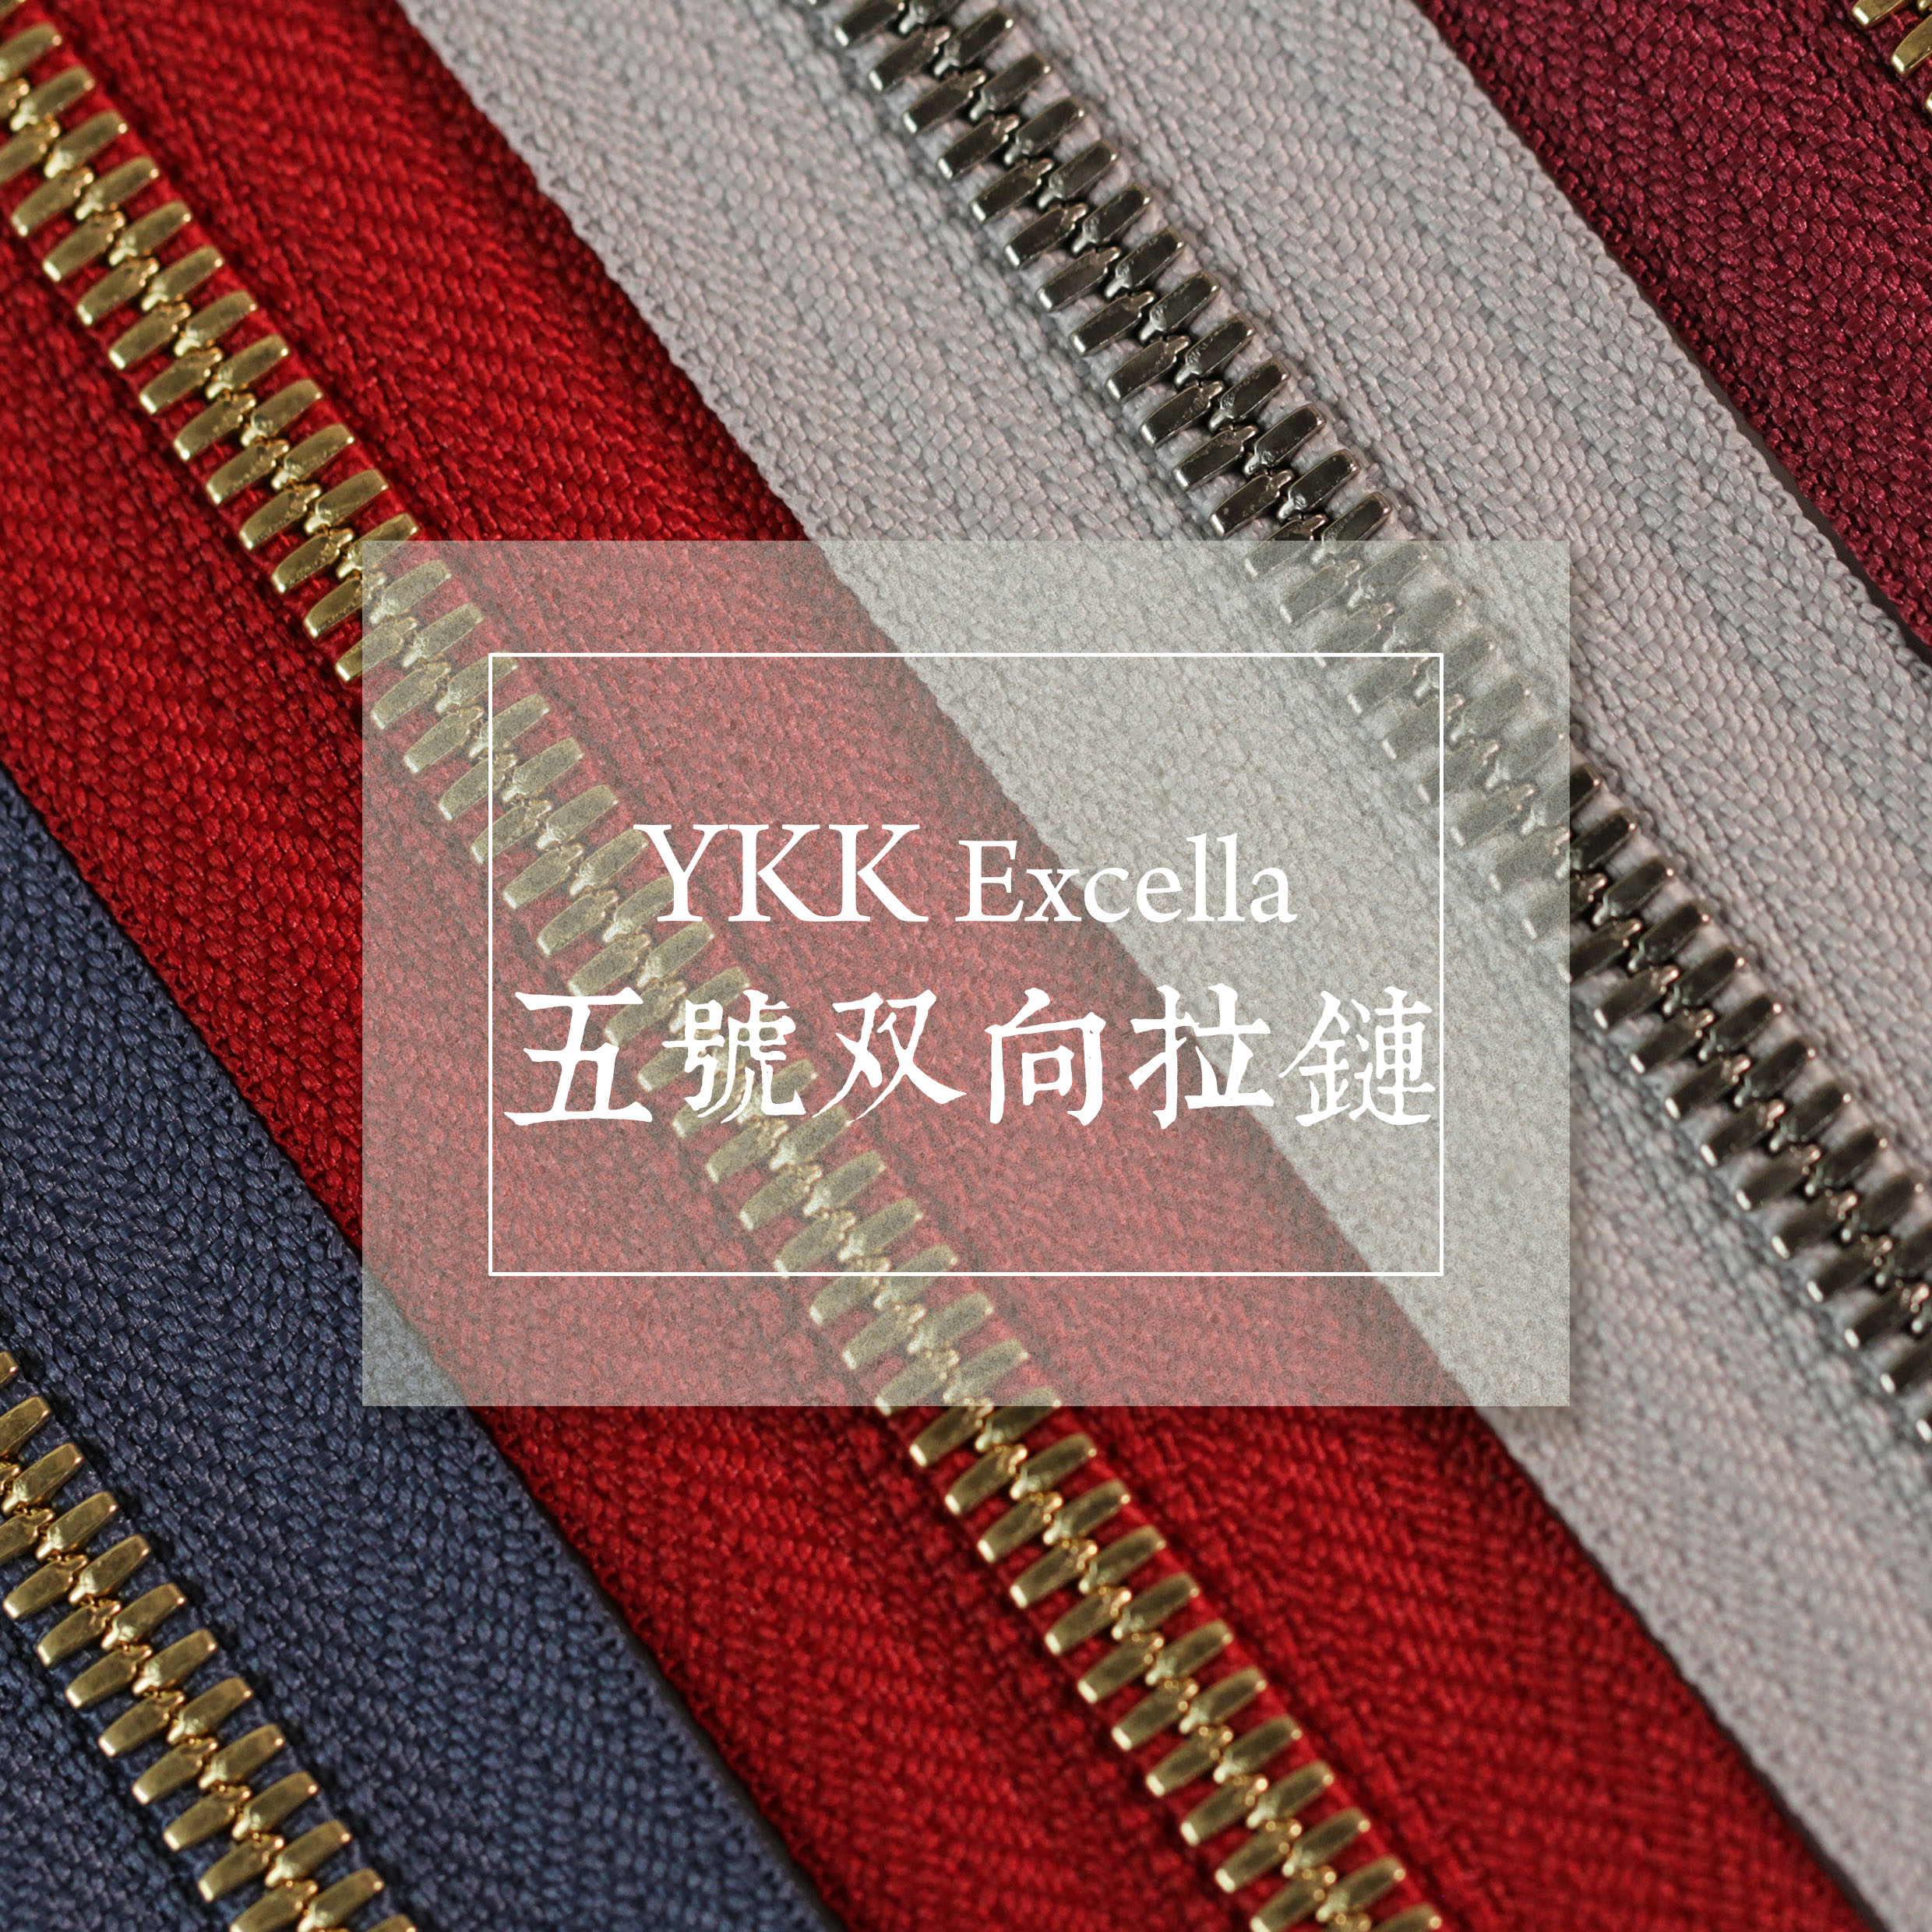 일본 수입 정품 YKKexcella 5호 양방향 옥수수 이빨 지퍼 핸드메이드 가죽 제품 diy 수제 가방 액세서리